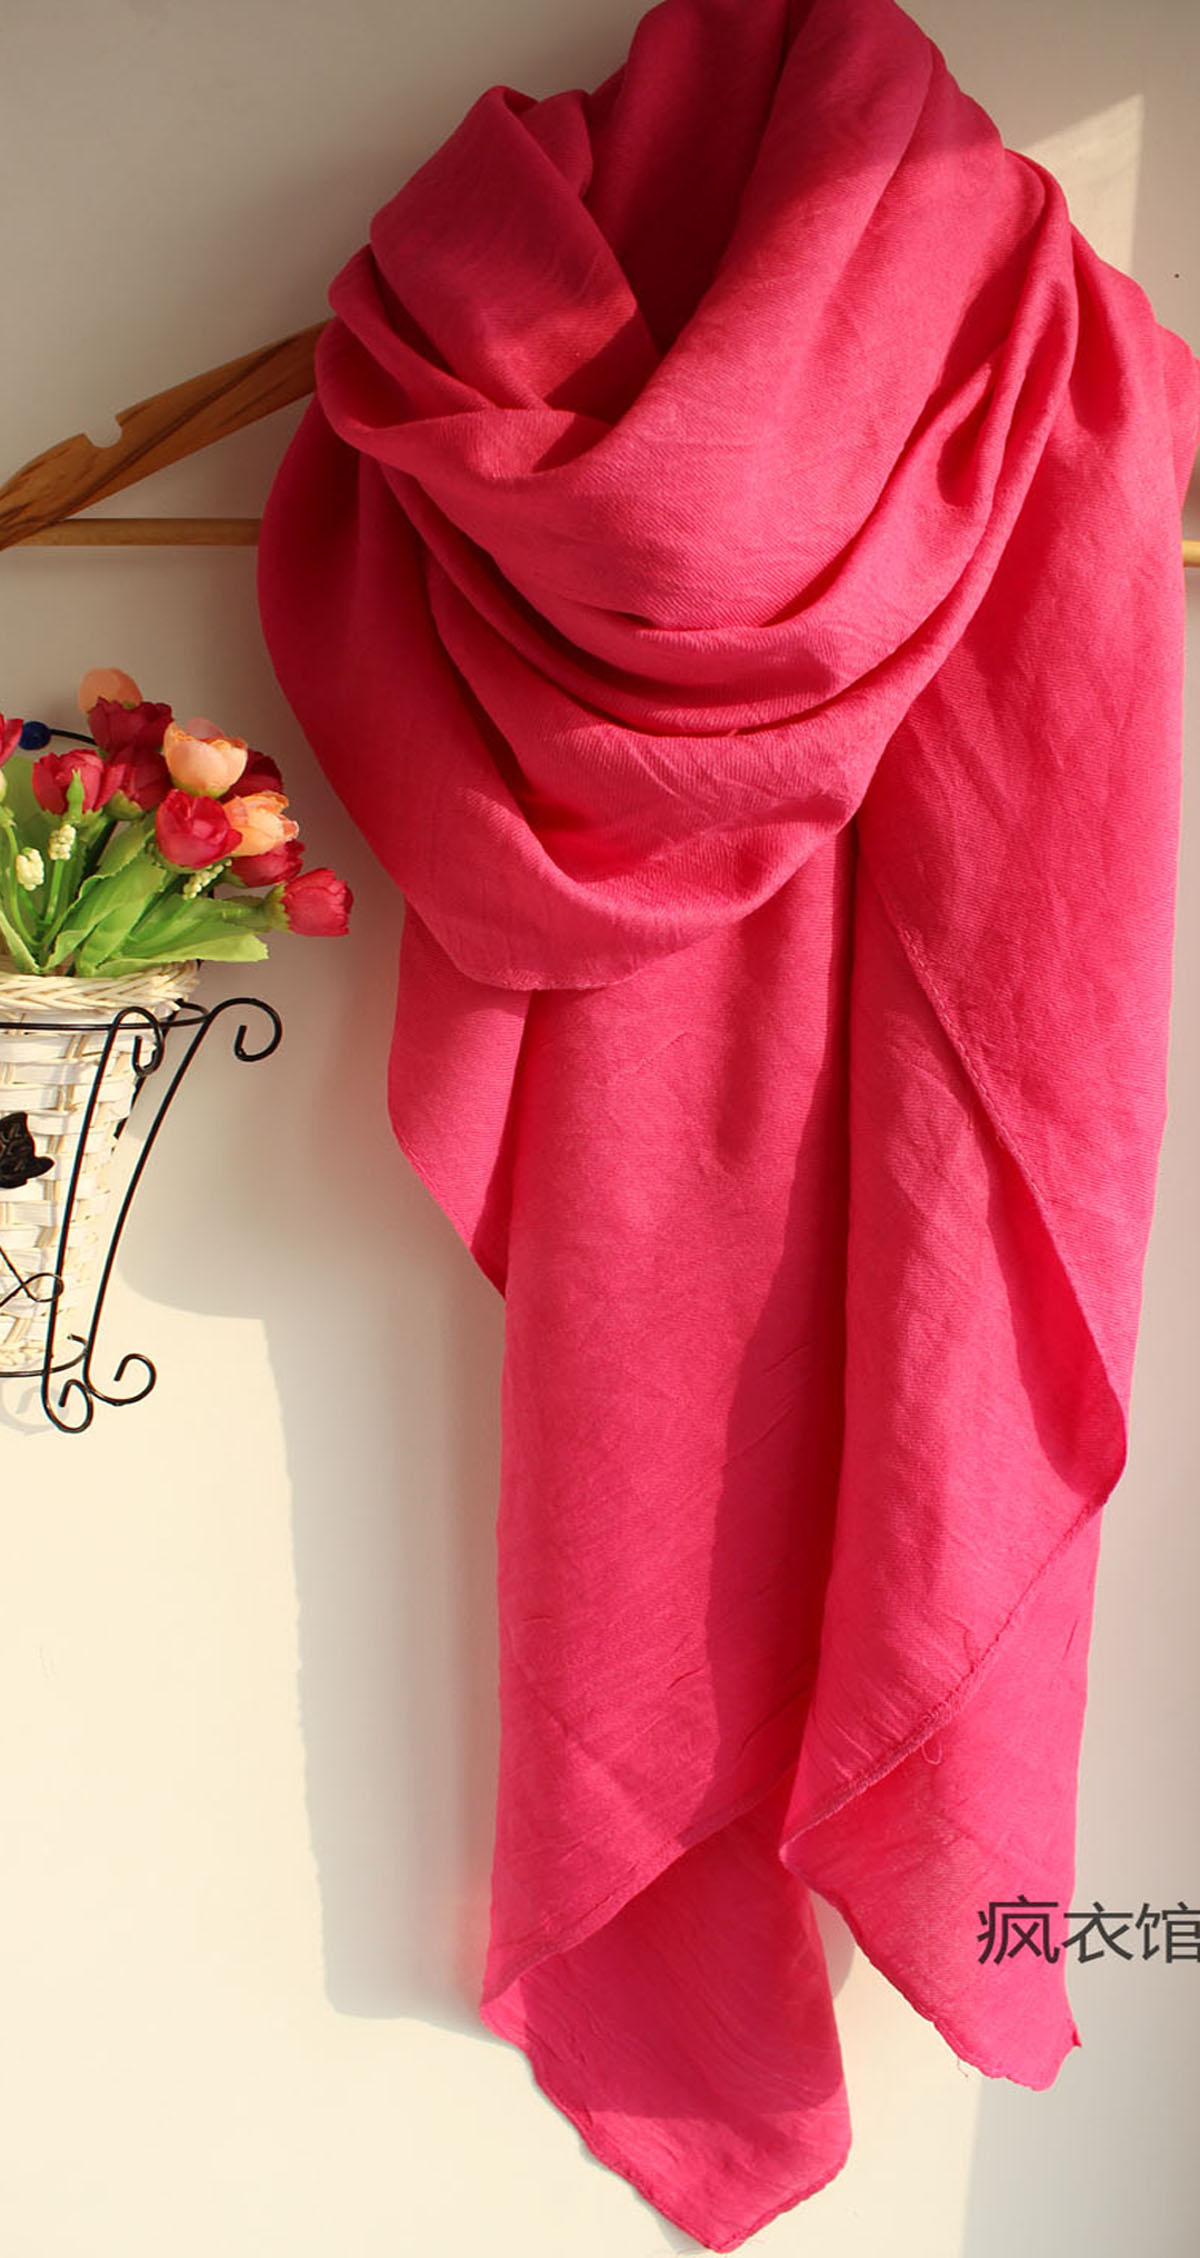 玫红色围巾,最流行的颜色!